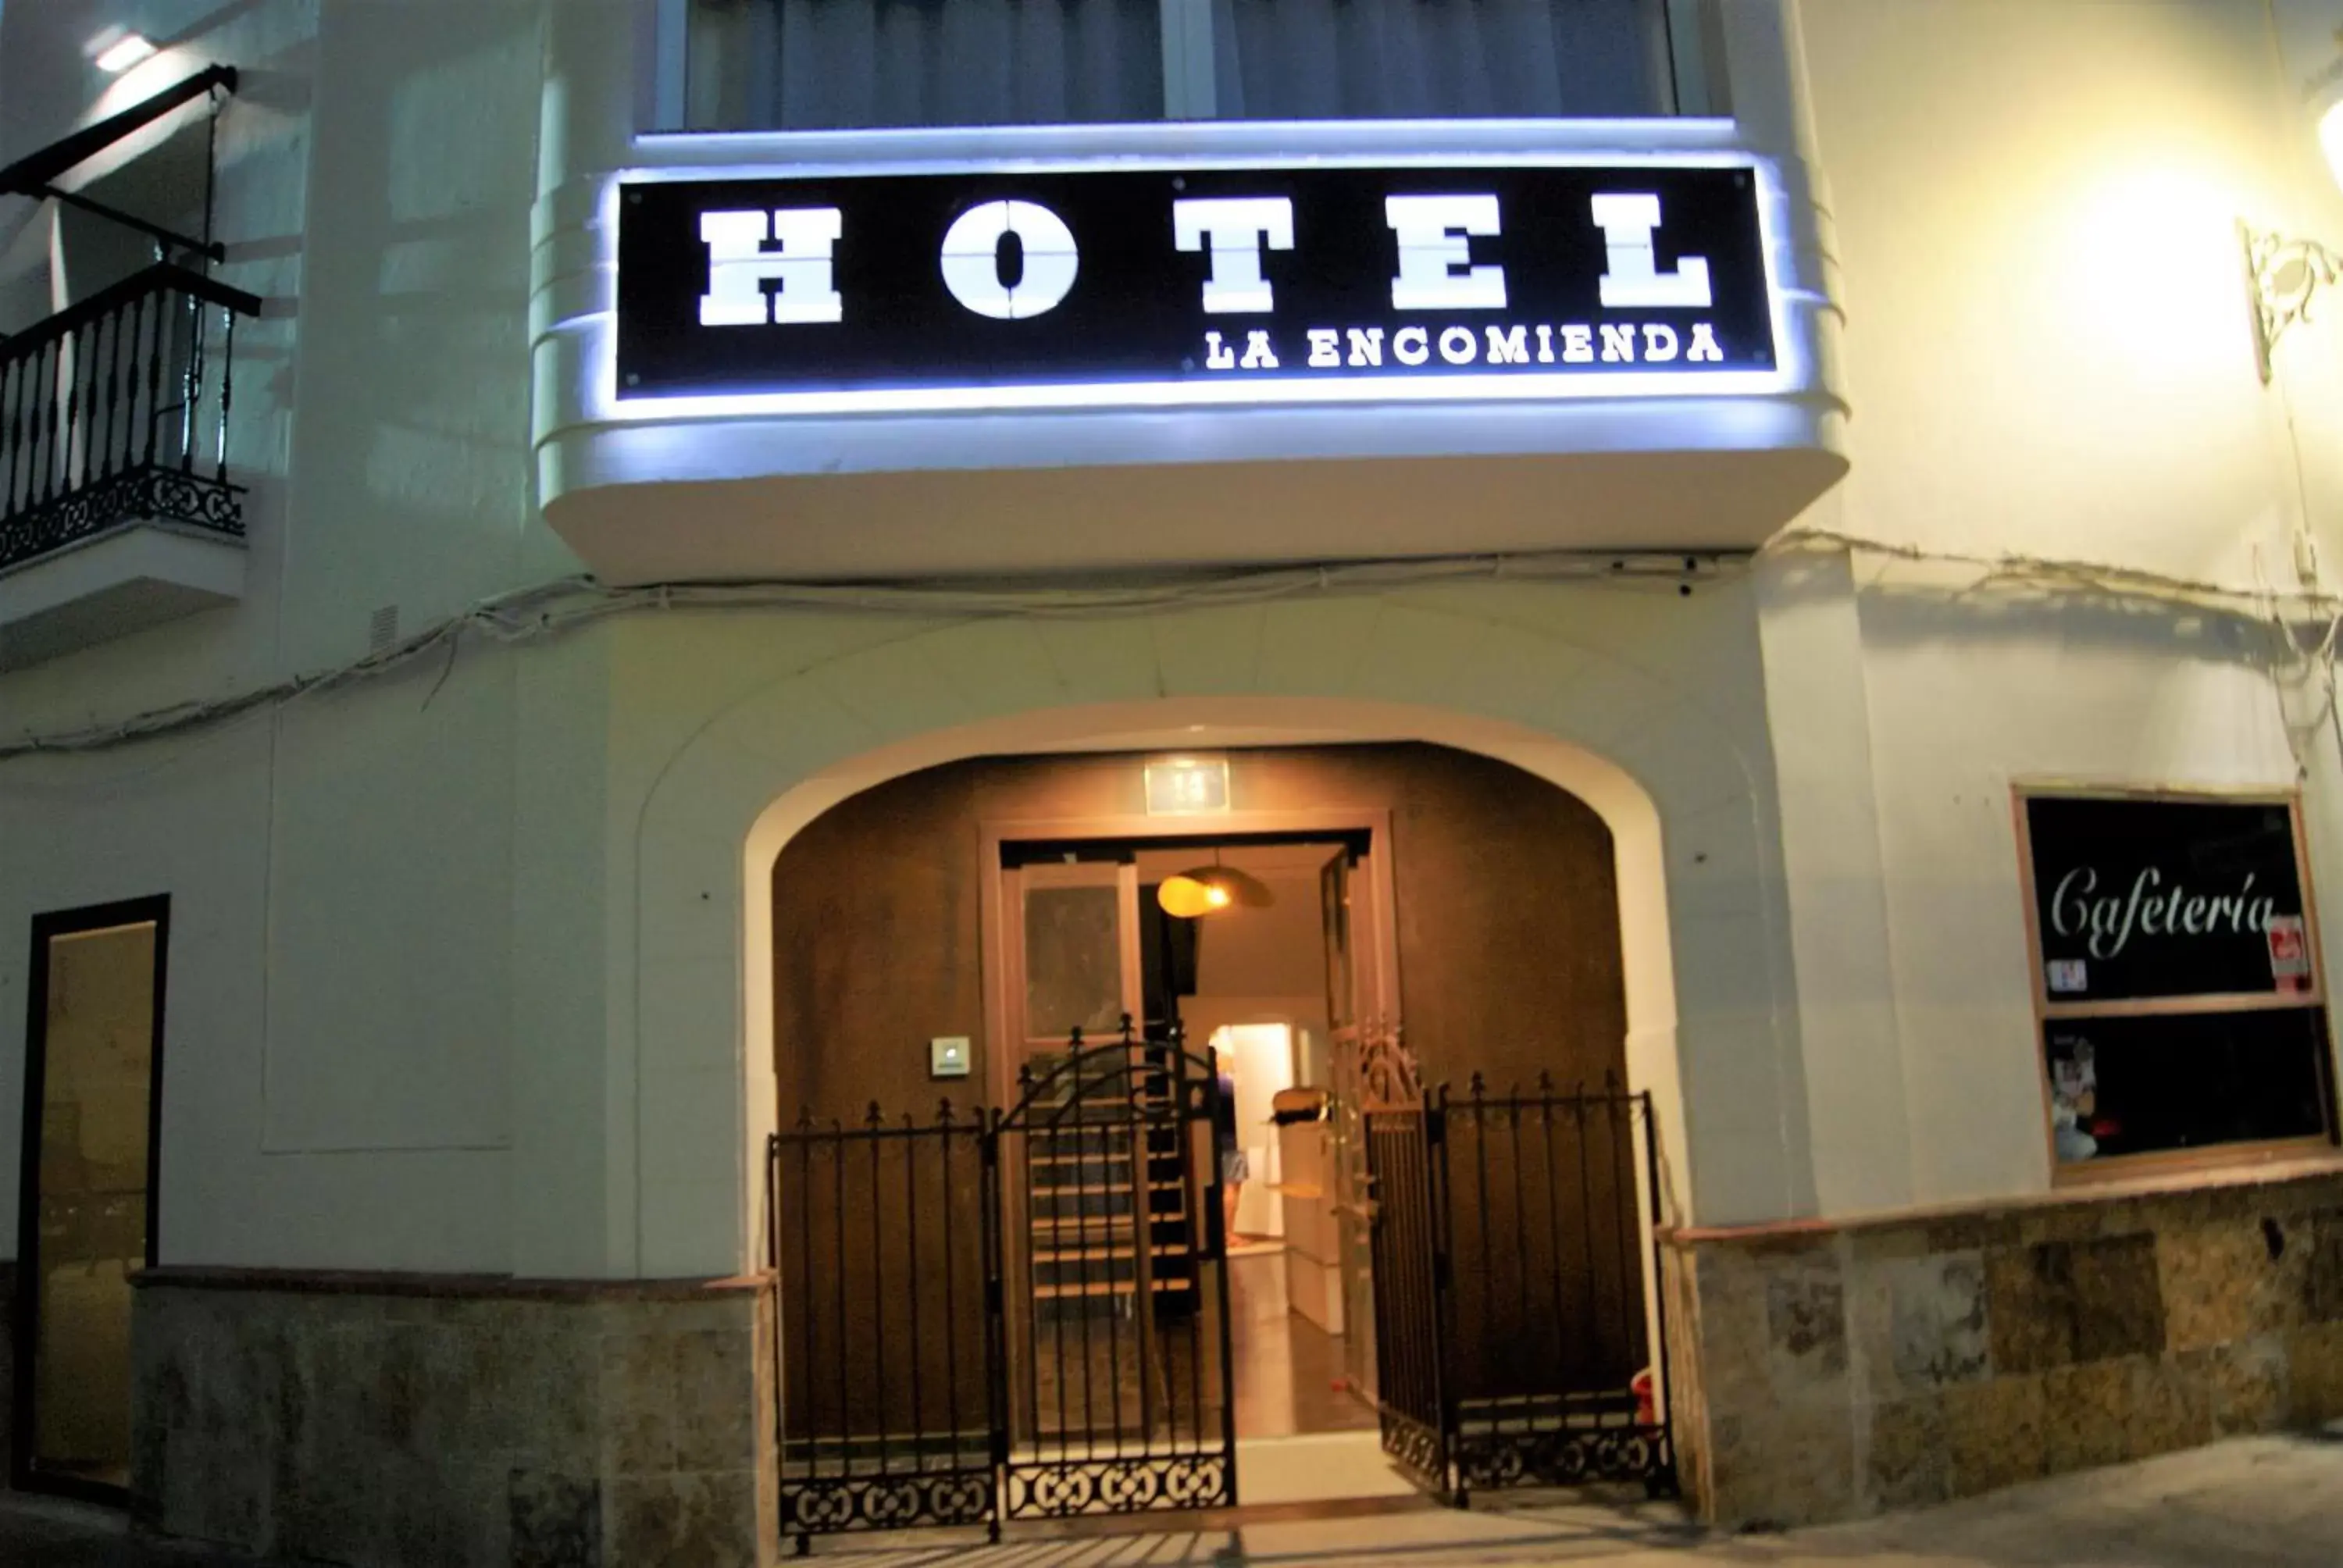 Facade/entrance in Hotel La Encomienda